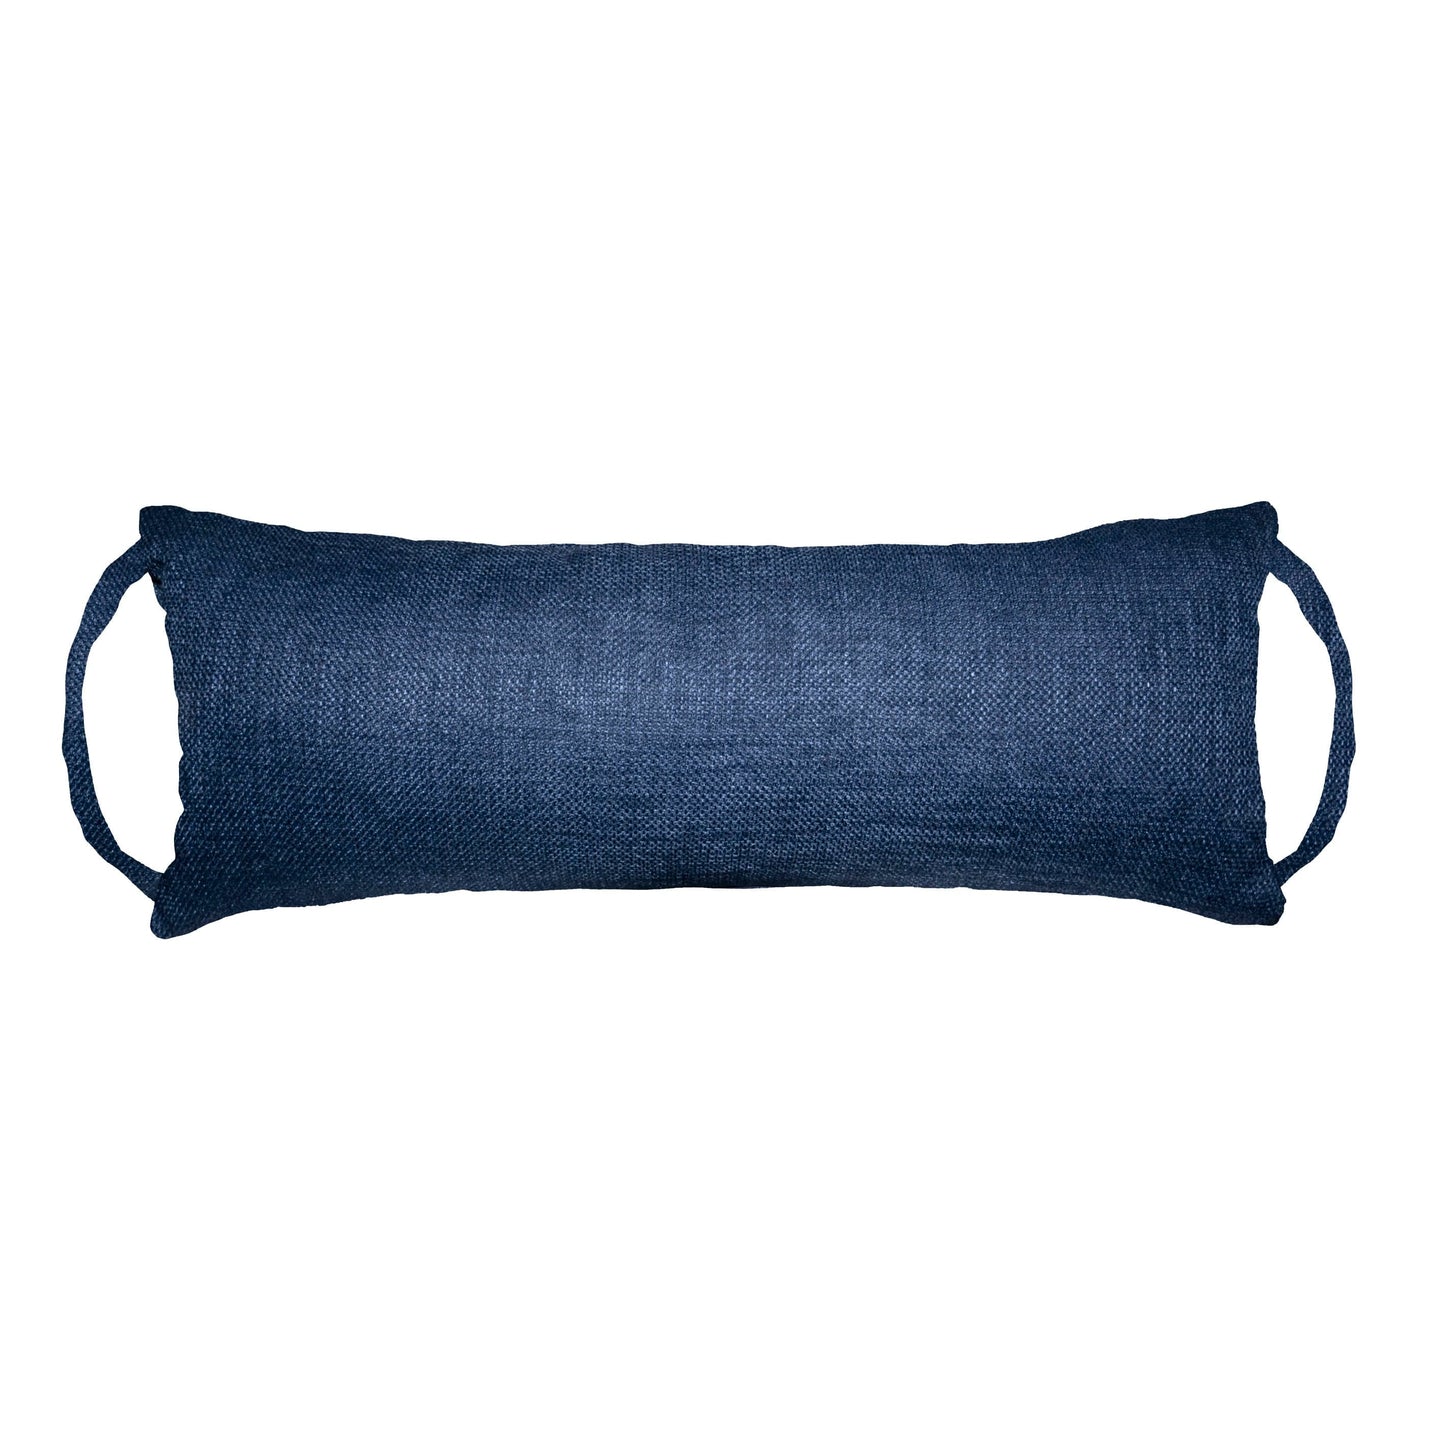 Rave Indigo Blue Travel Pillow | Barnett Home Decor | Neck Roll Pillow